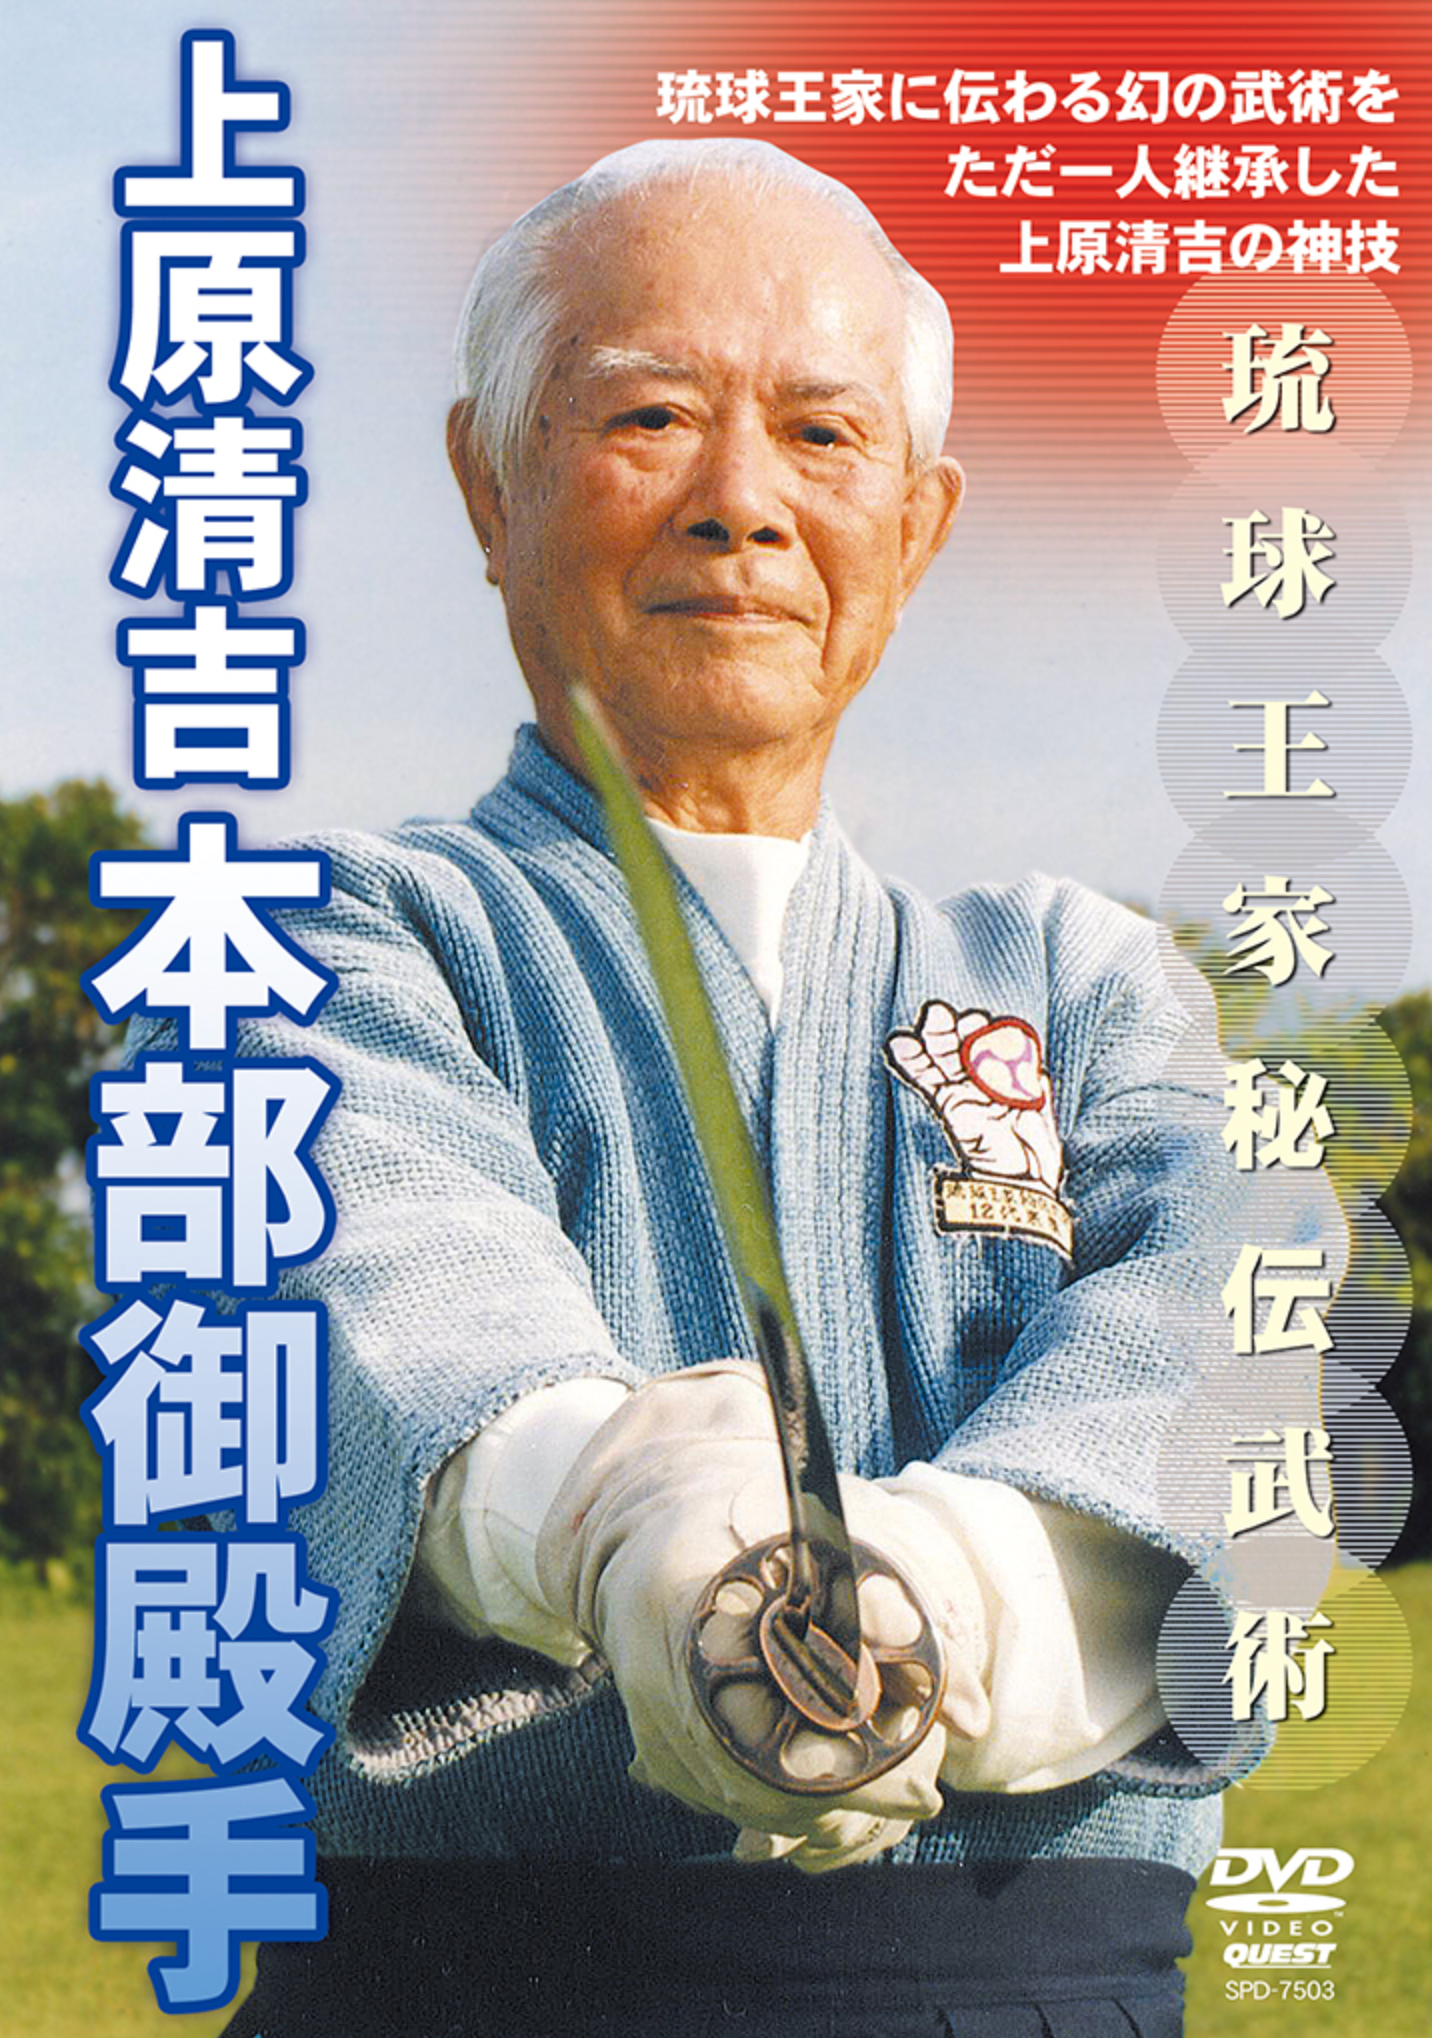 Motobu Gotente DVD with Seikichi Uehara Vol 2 - Budovideos Inc